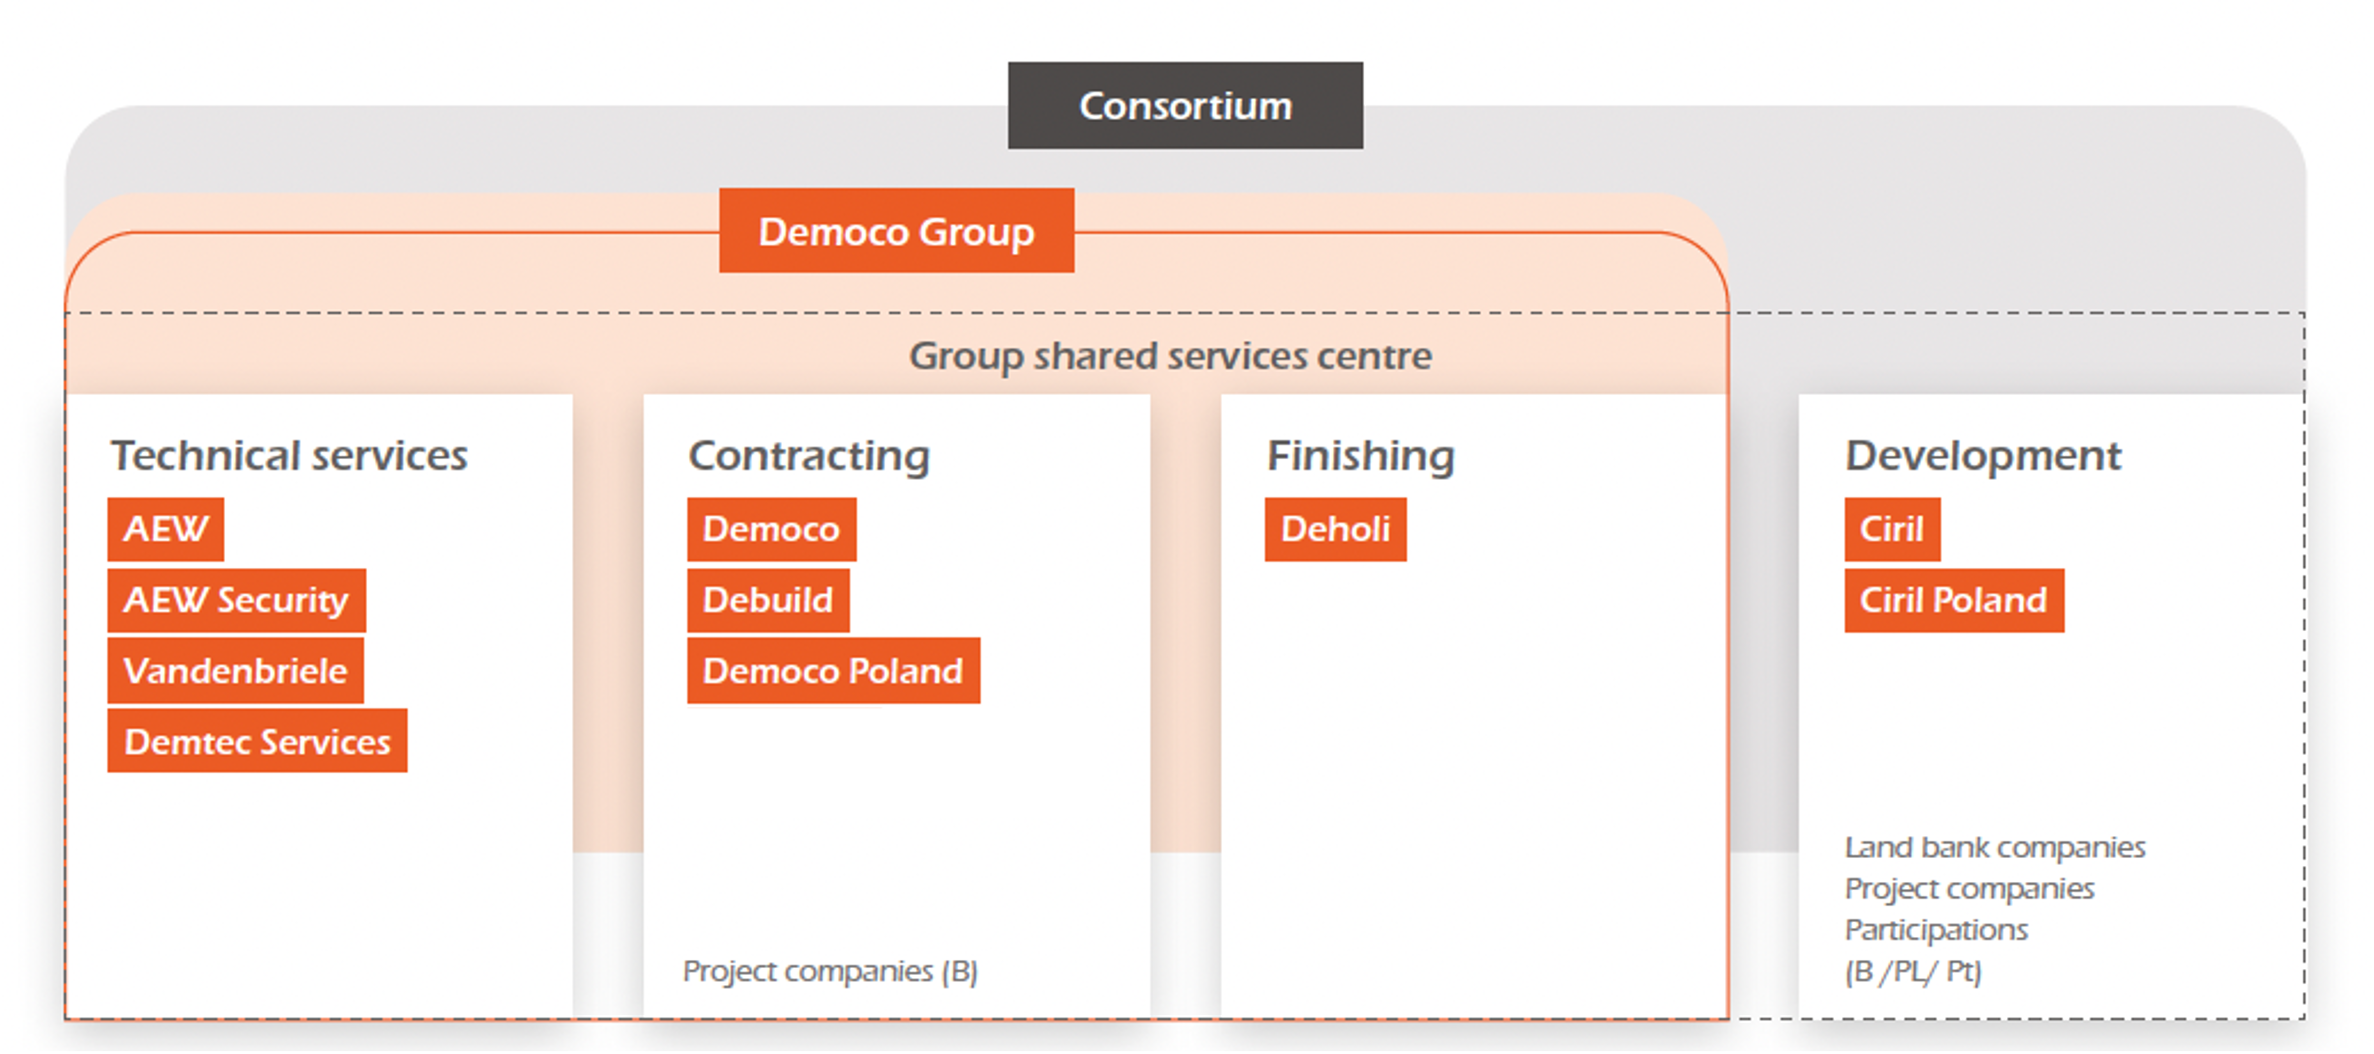 Consortium Democo Group